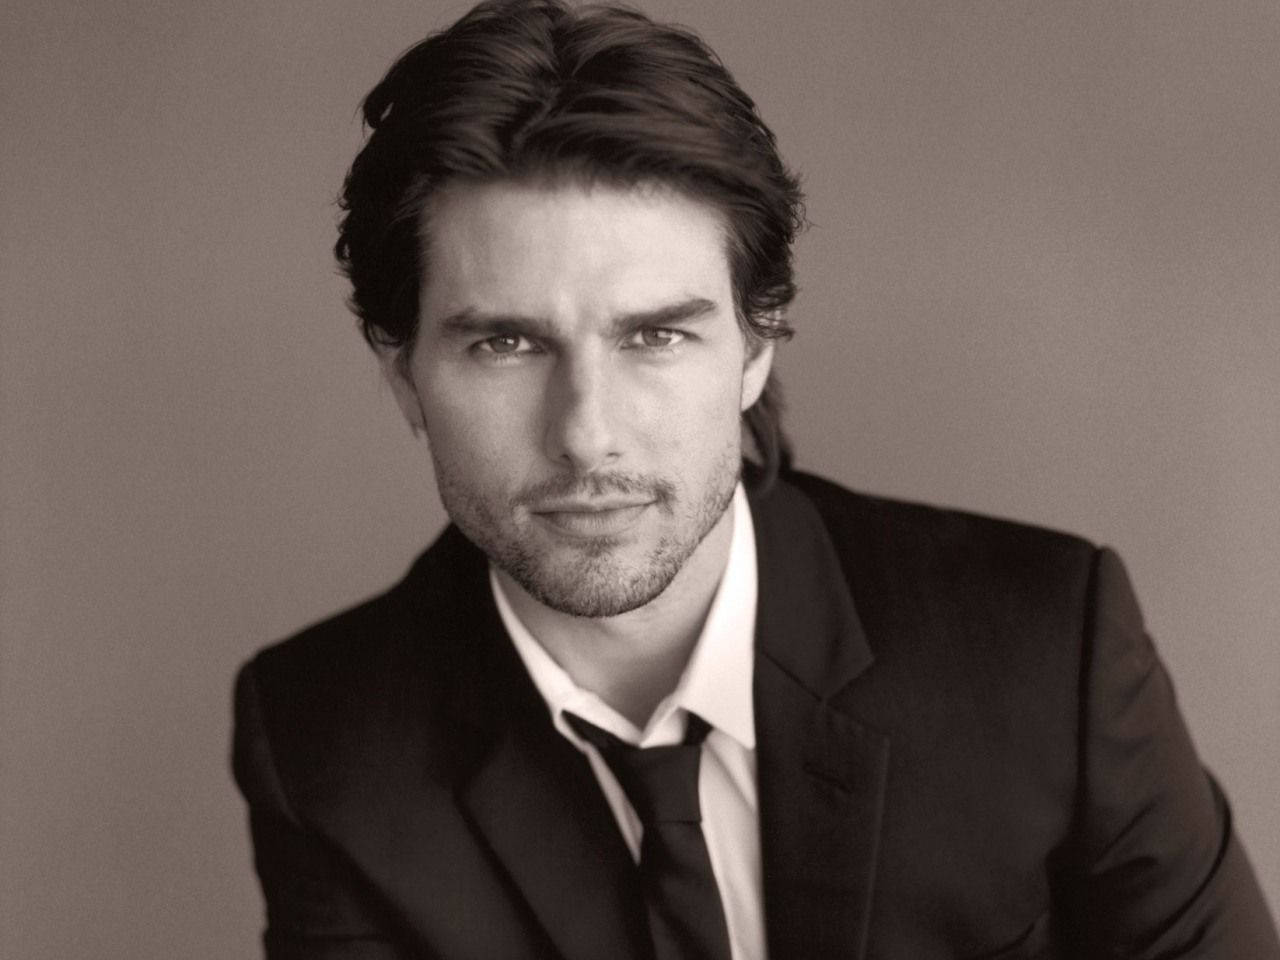 Tom Cruise In Suit